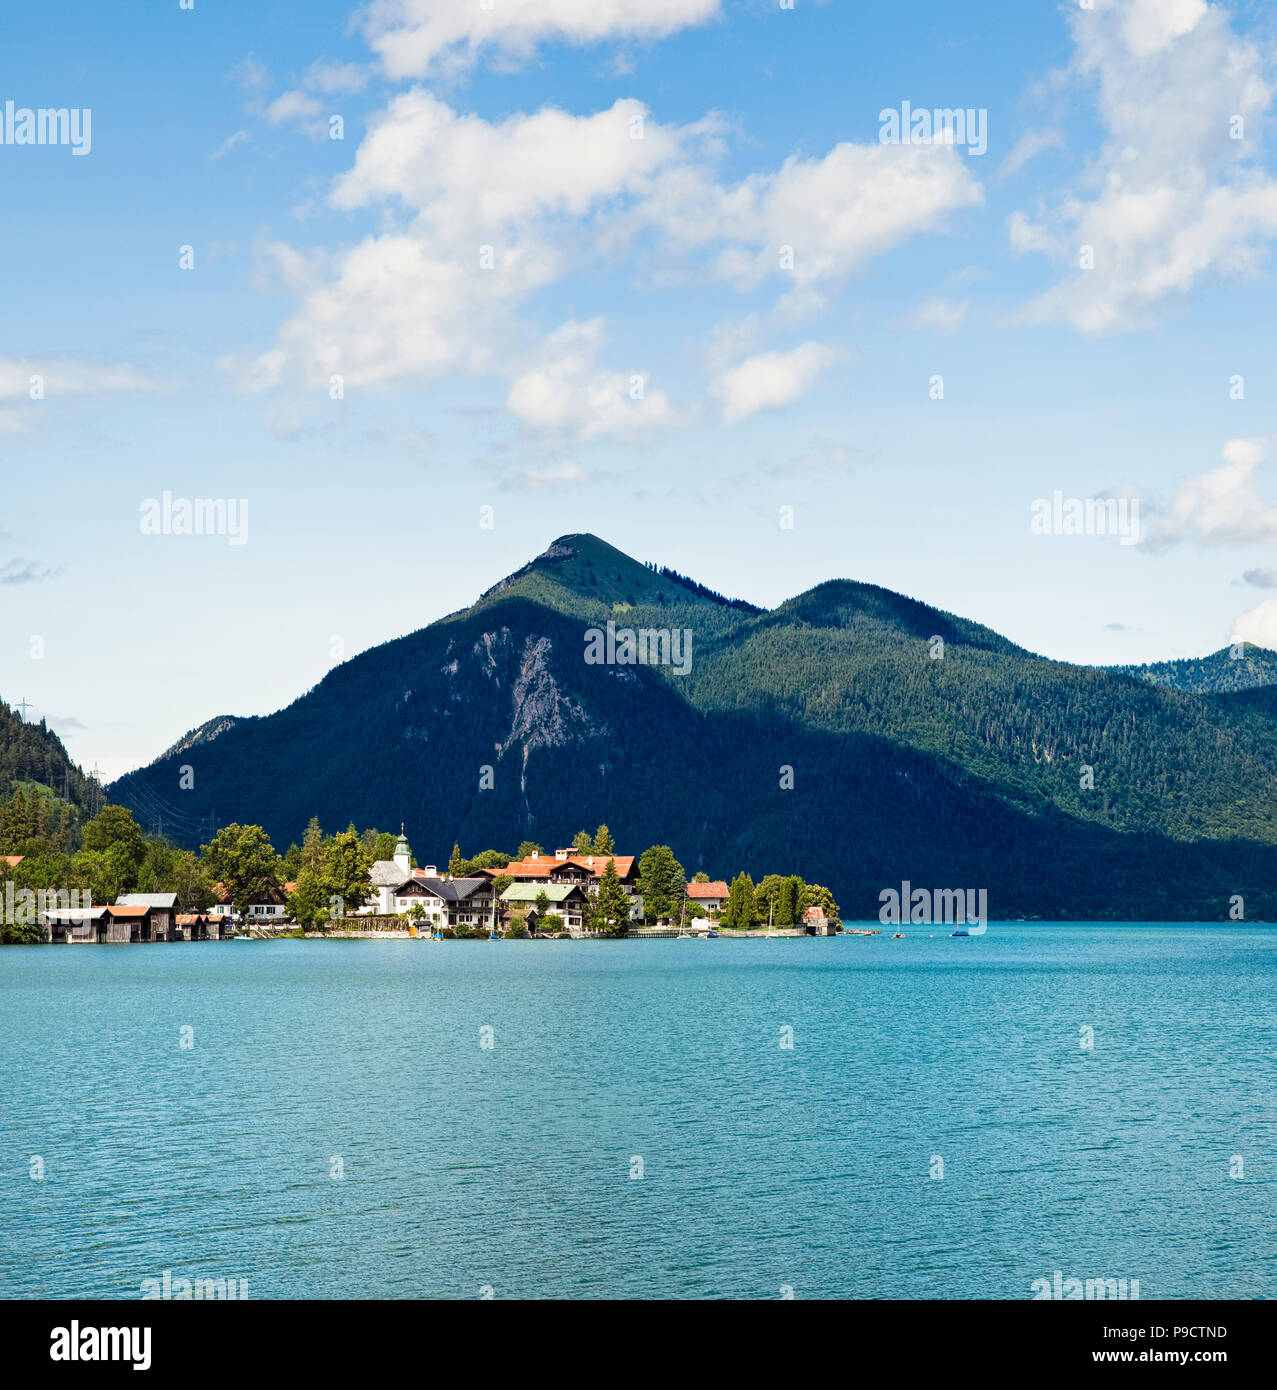 La pequeña ciudad lacustre de Walchensee en el lago Walchensee, Baviera, Alemania, Europa del Sur Foto de stock